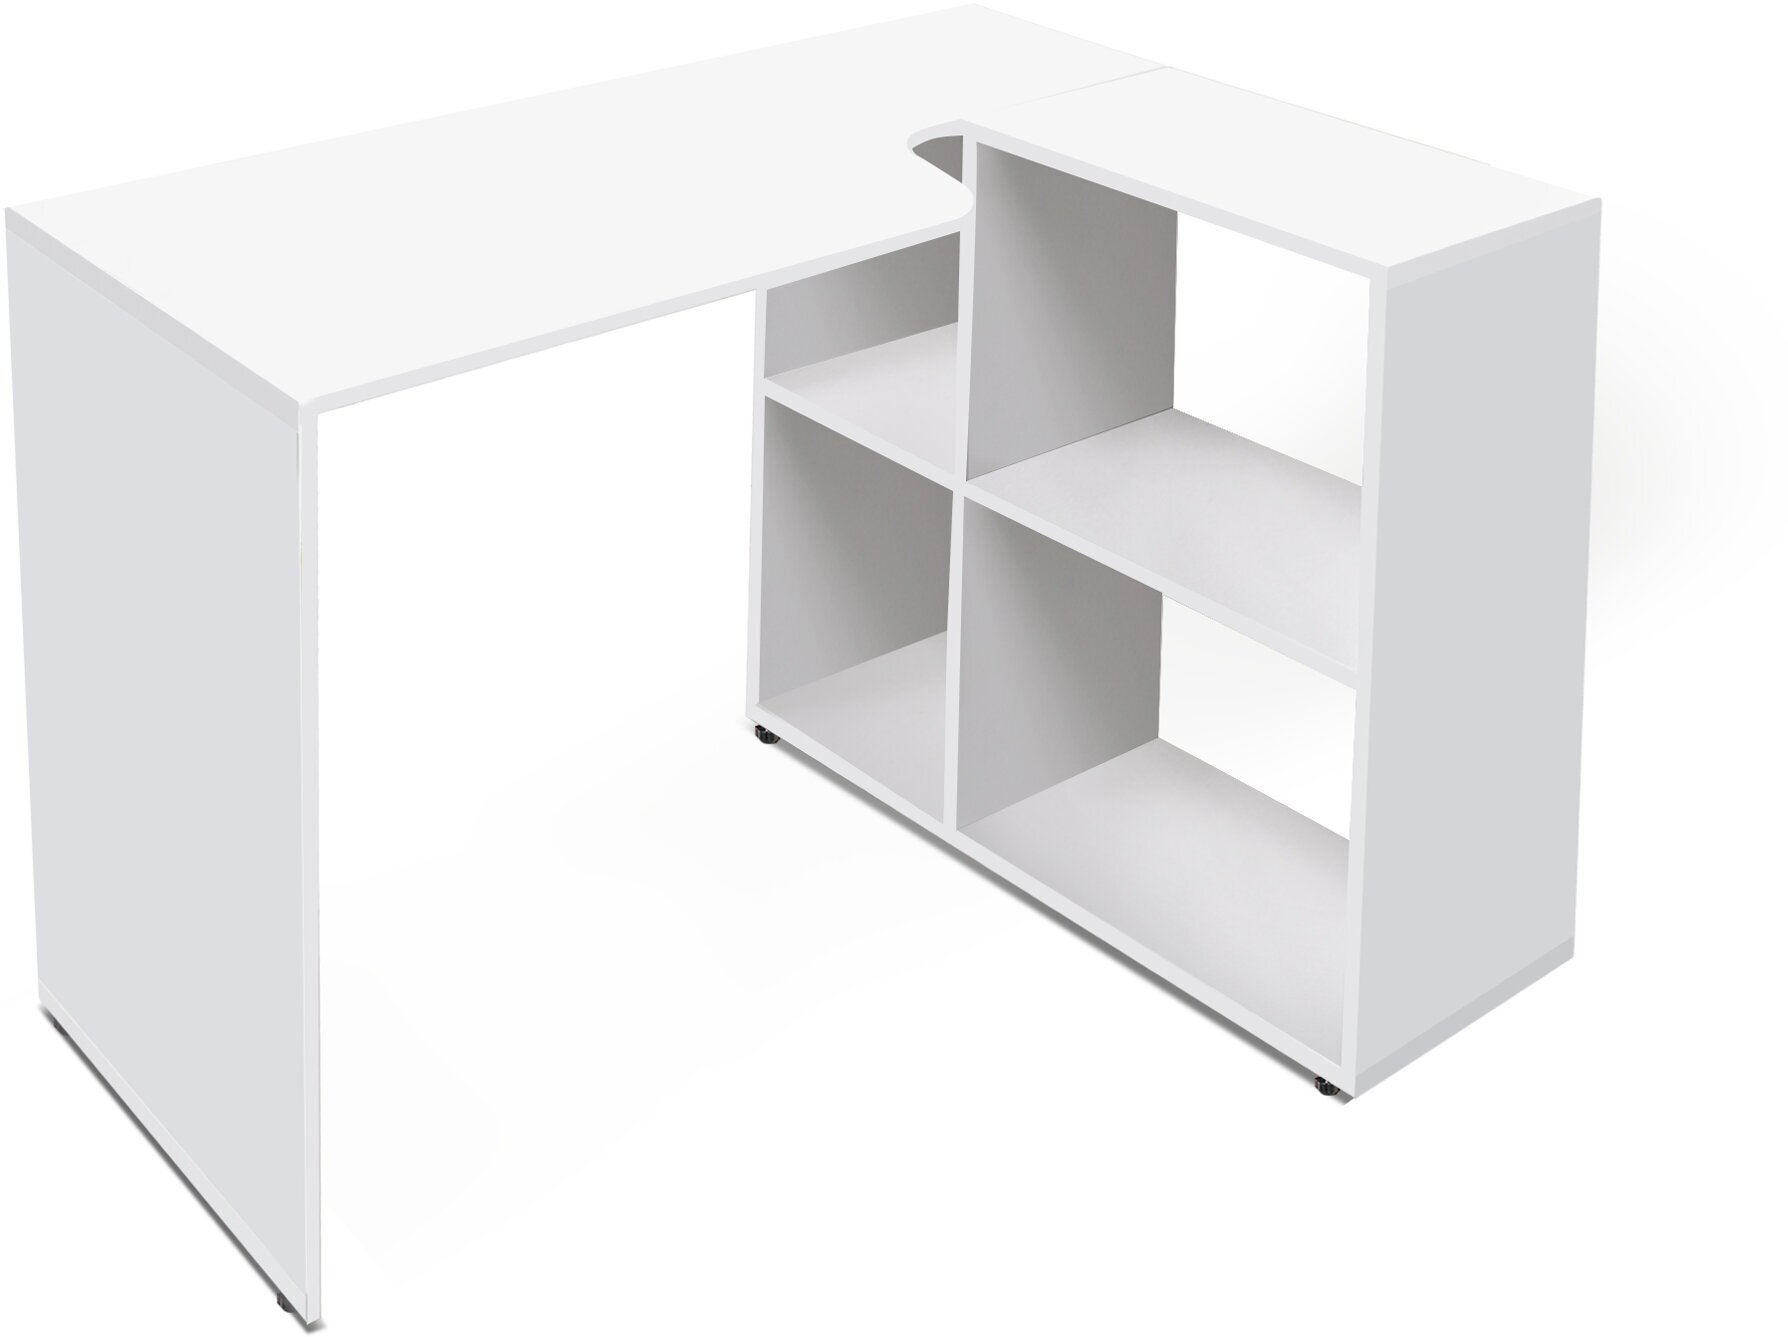 Поворотный письменный стол Л-7 (белый) 165 см.